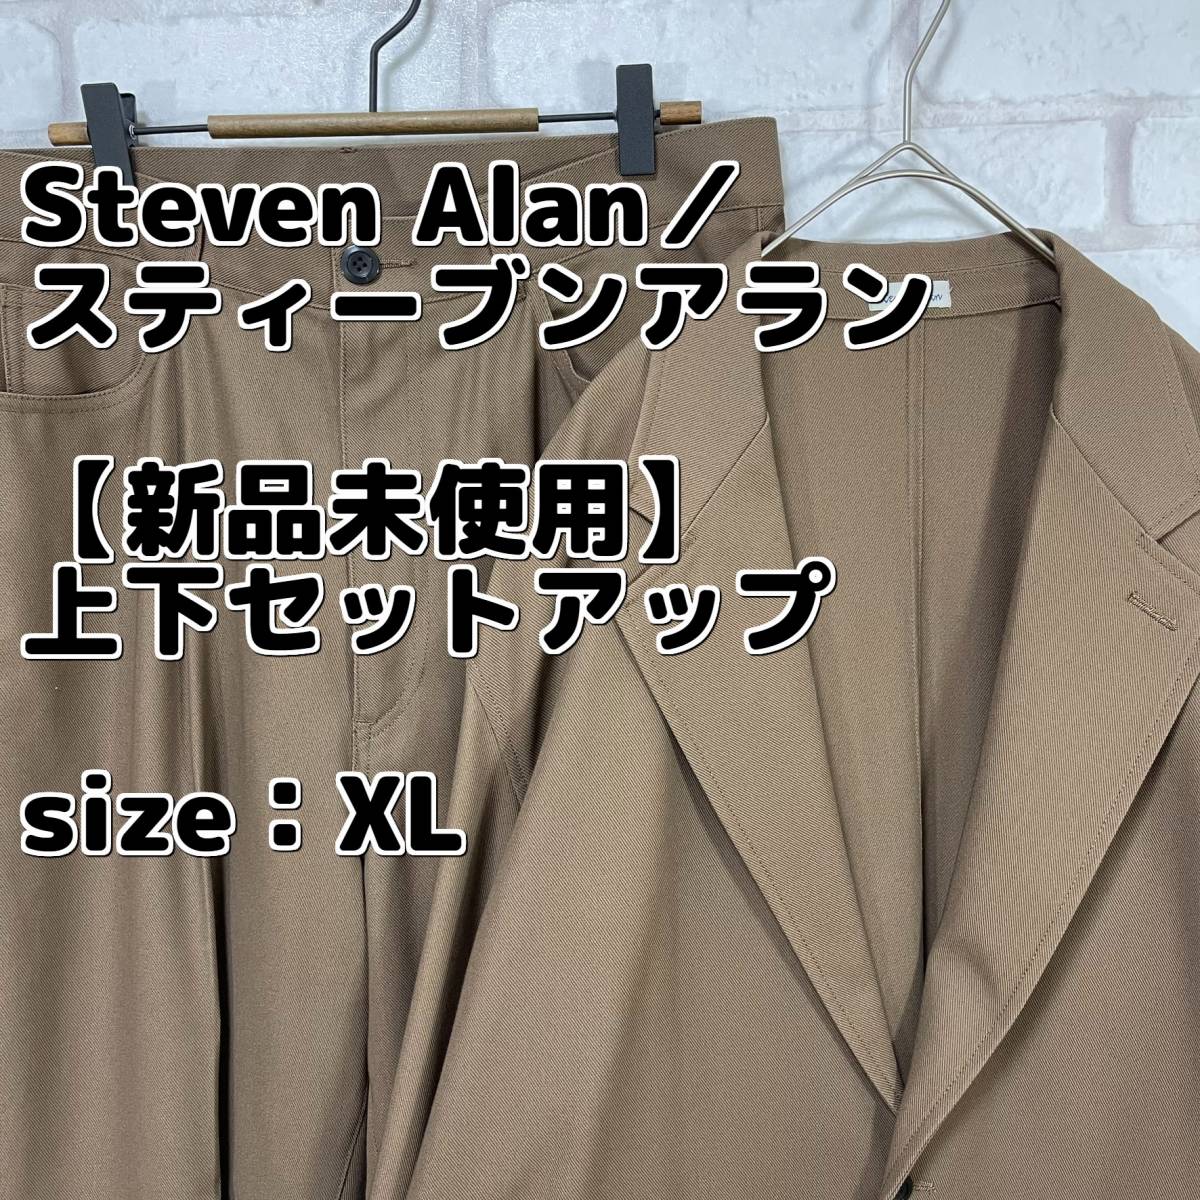 【新品未使用】Steven Alan／スティーブンアラン 上下 セットアップ ジャケット パンツ スーツ 入学式 卒業式 入社式 新社会人